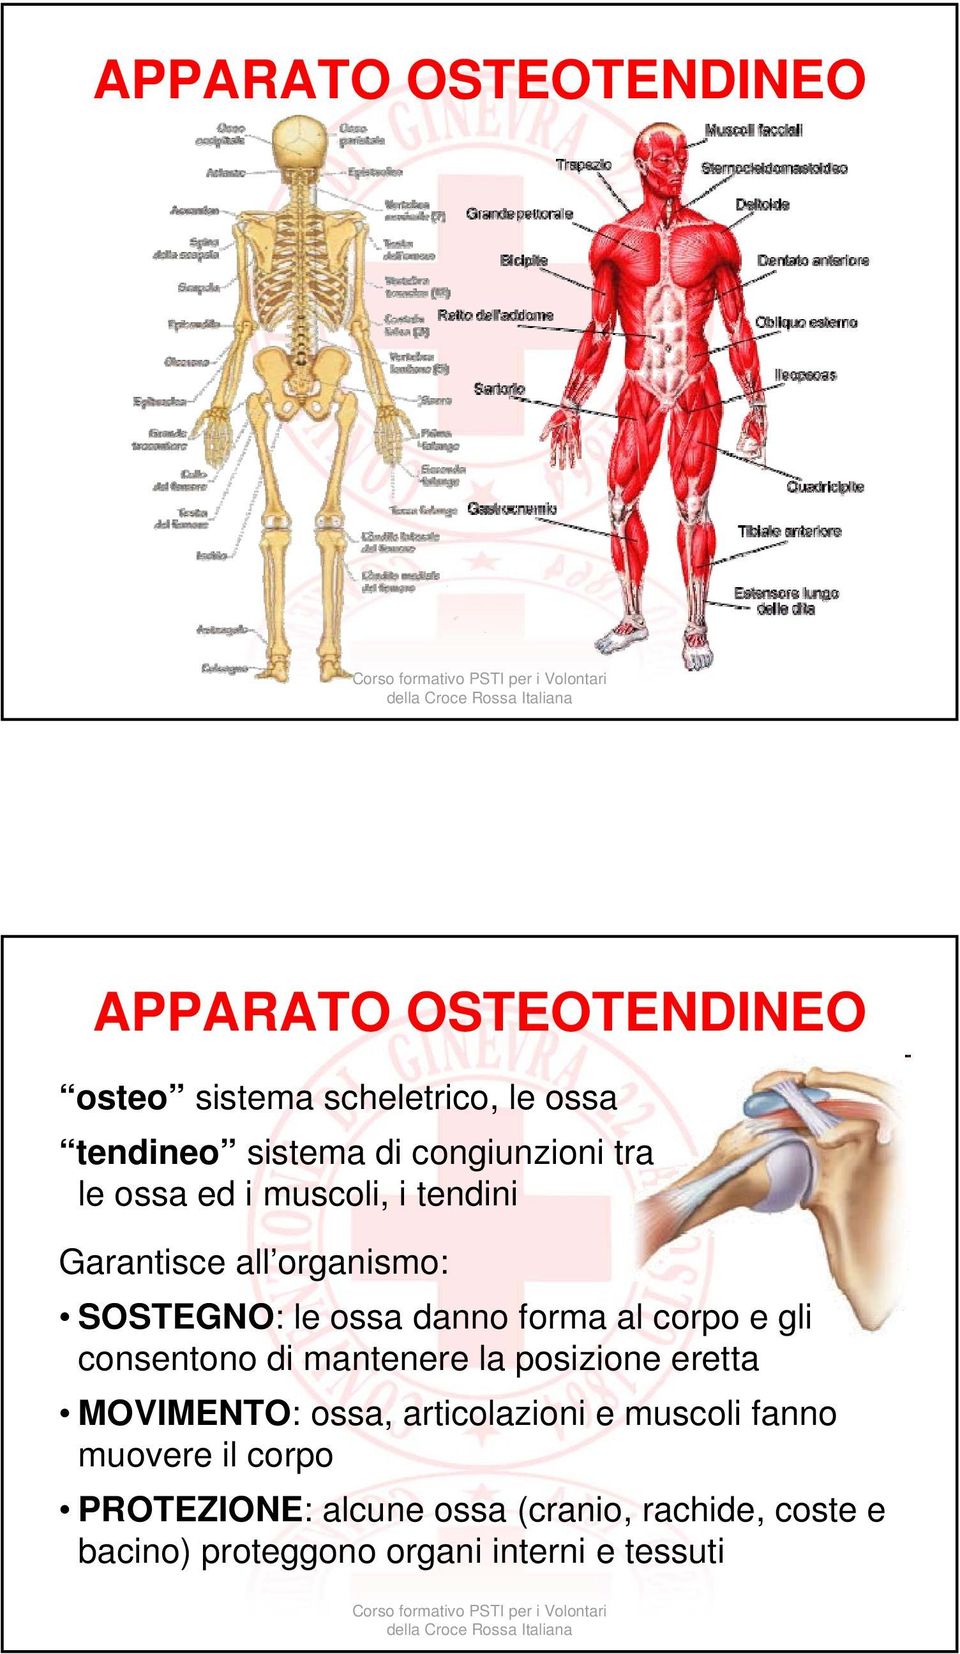 al corpo e gli consentono di mantenere la posizione eretta MOVIMENTO: ossa, articolazioni e muscoli fanno